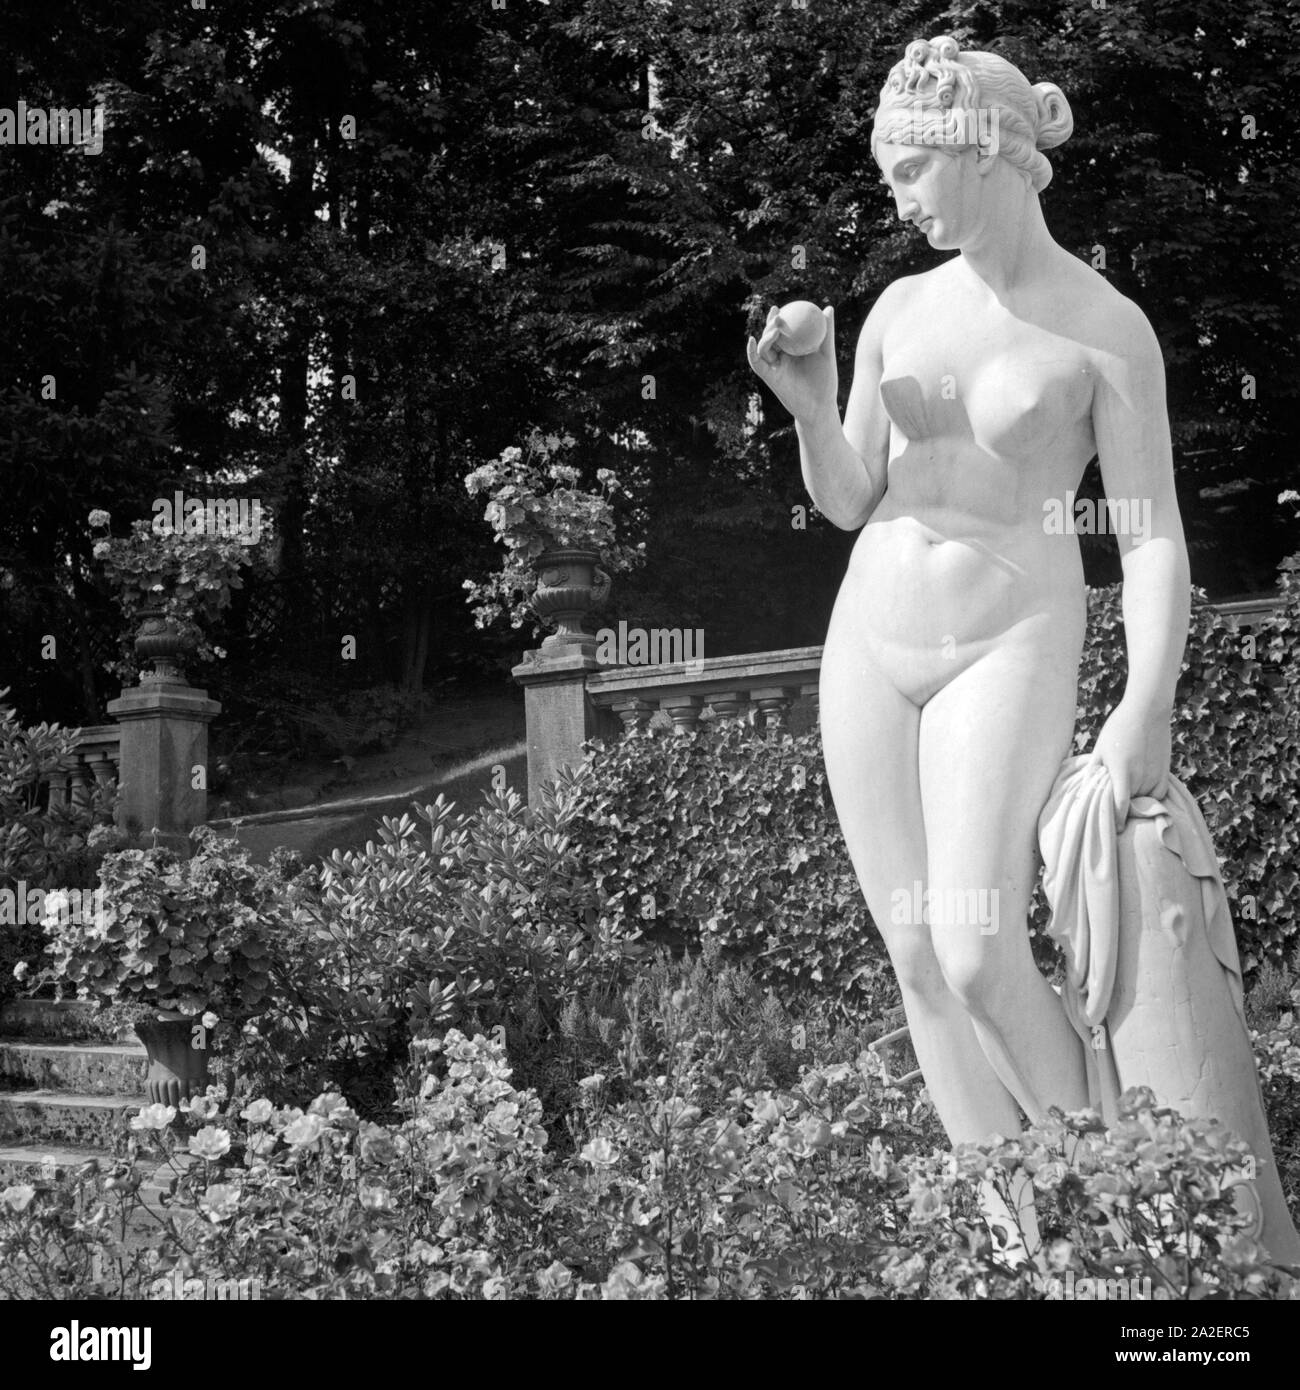 Frauenstatue gegenüber der Stadt Wildbad im Schwarzwald, Deutschland 1930er Jahre. Scultura di una femmina in oppsite del comune di Wildbad nella Foresta Nera, Germania 1930s. Foto Stock